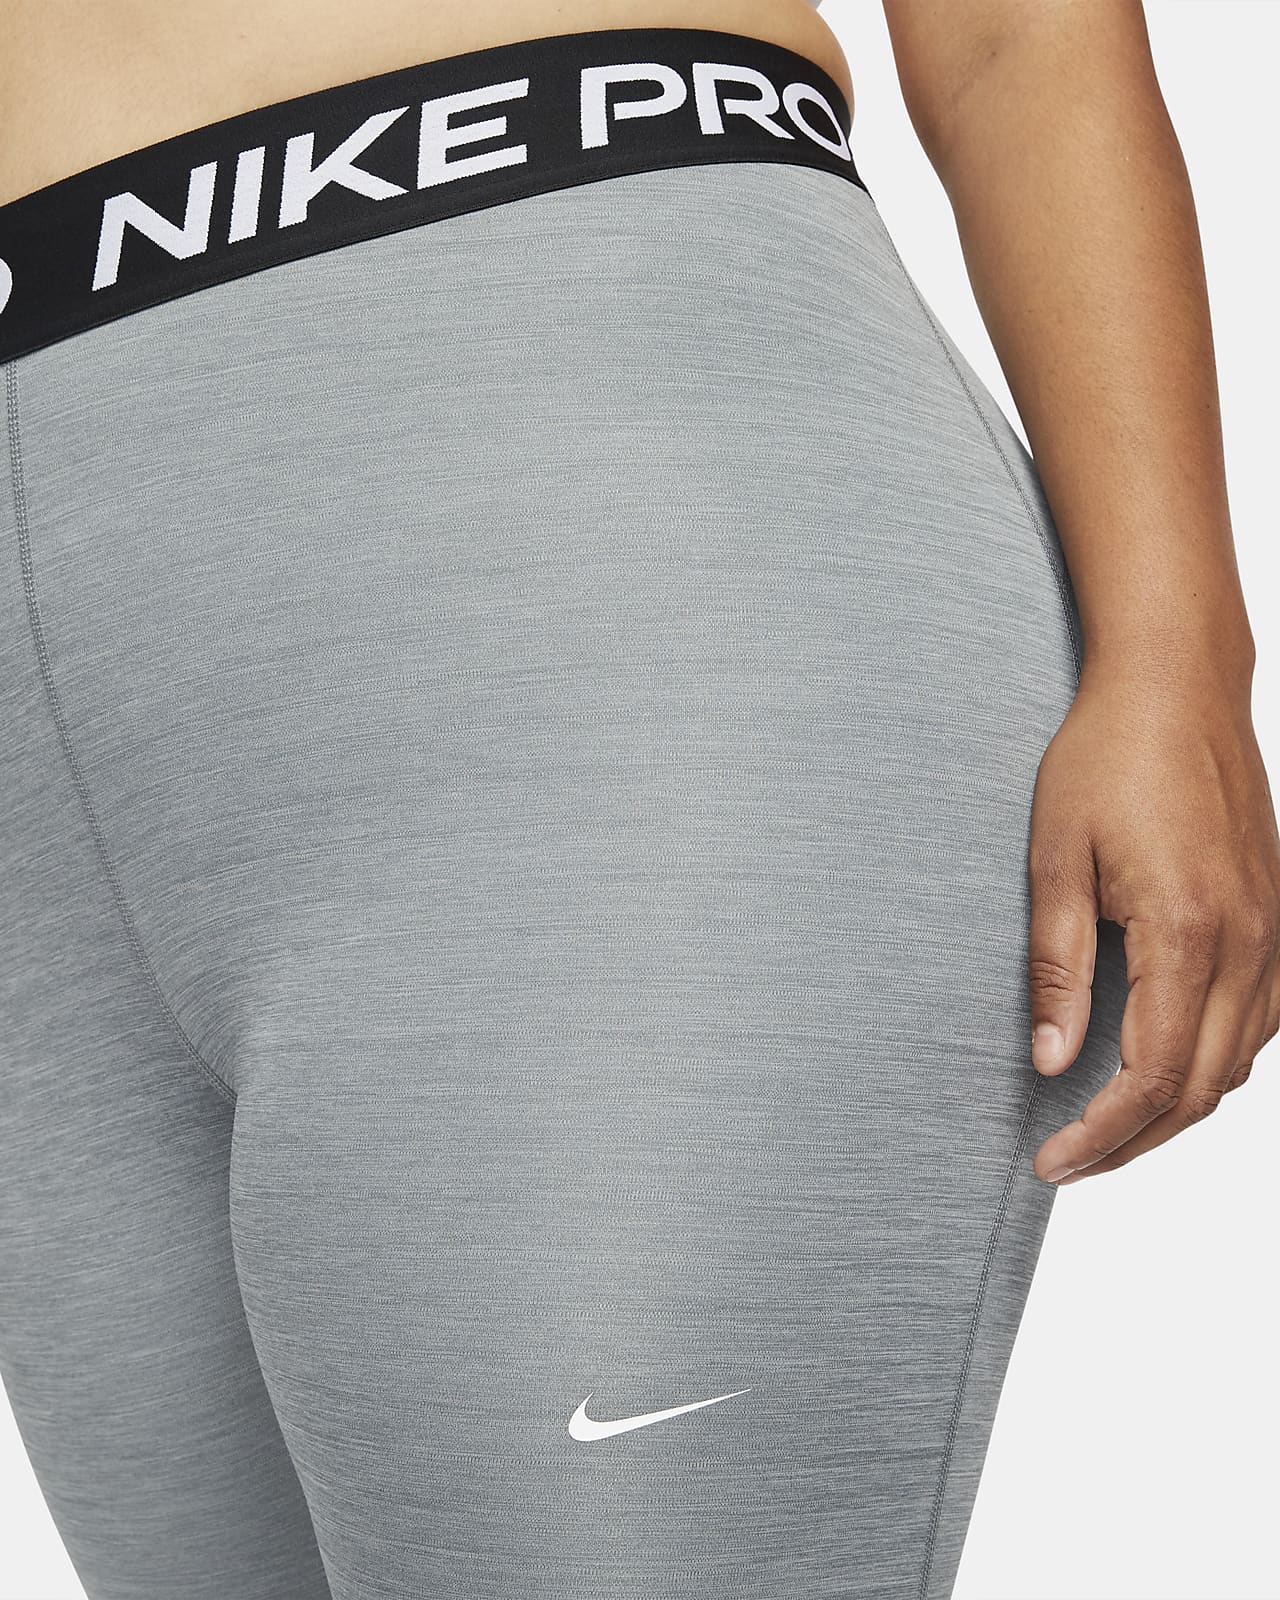 Pardon Afwijzen component Nike Pro 365 Women's Leggings (Plus Size). Nike.com